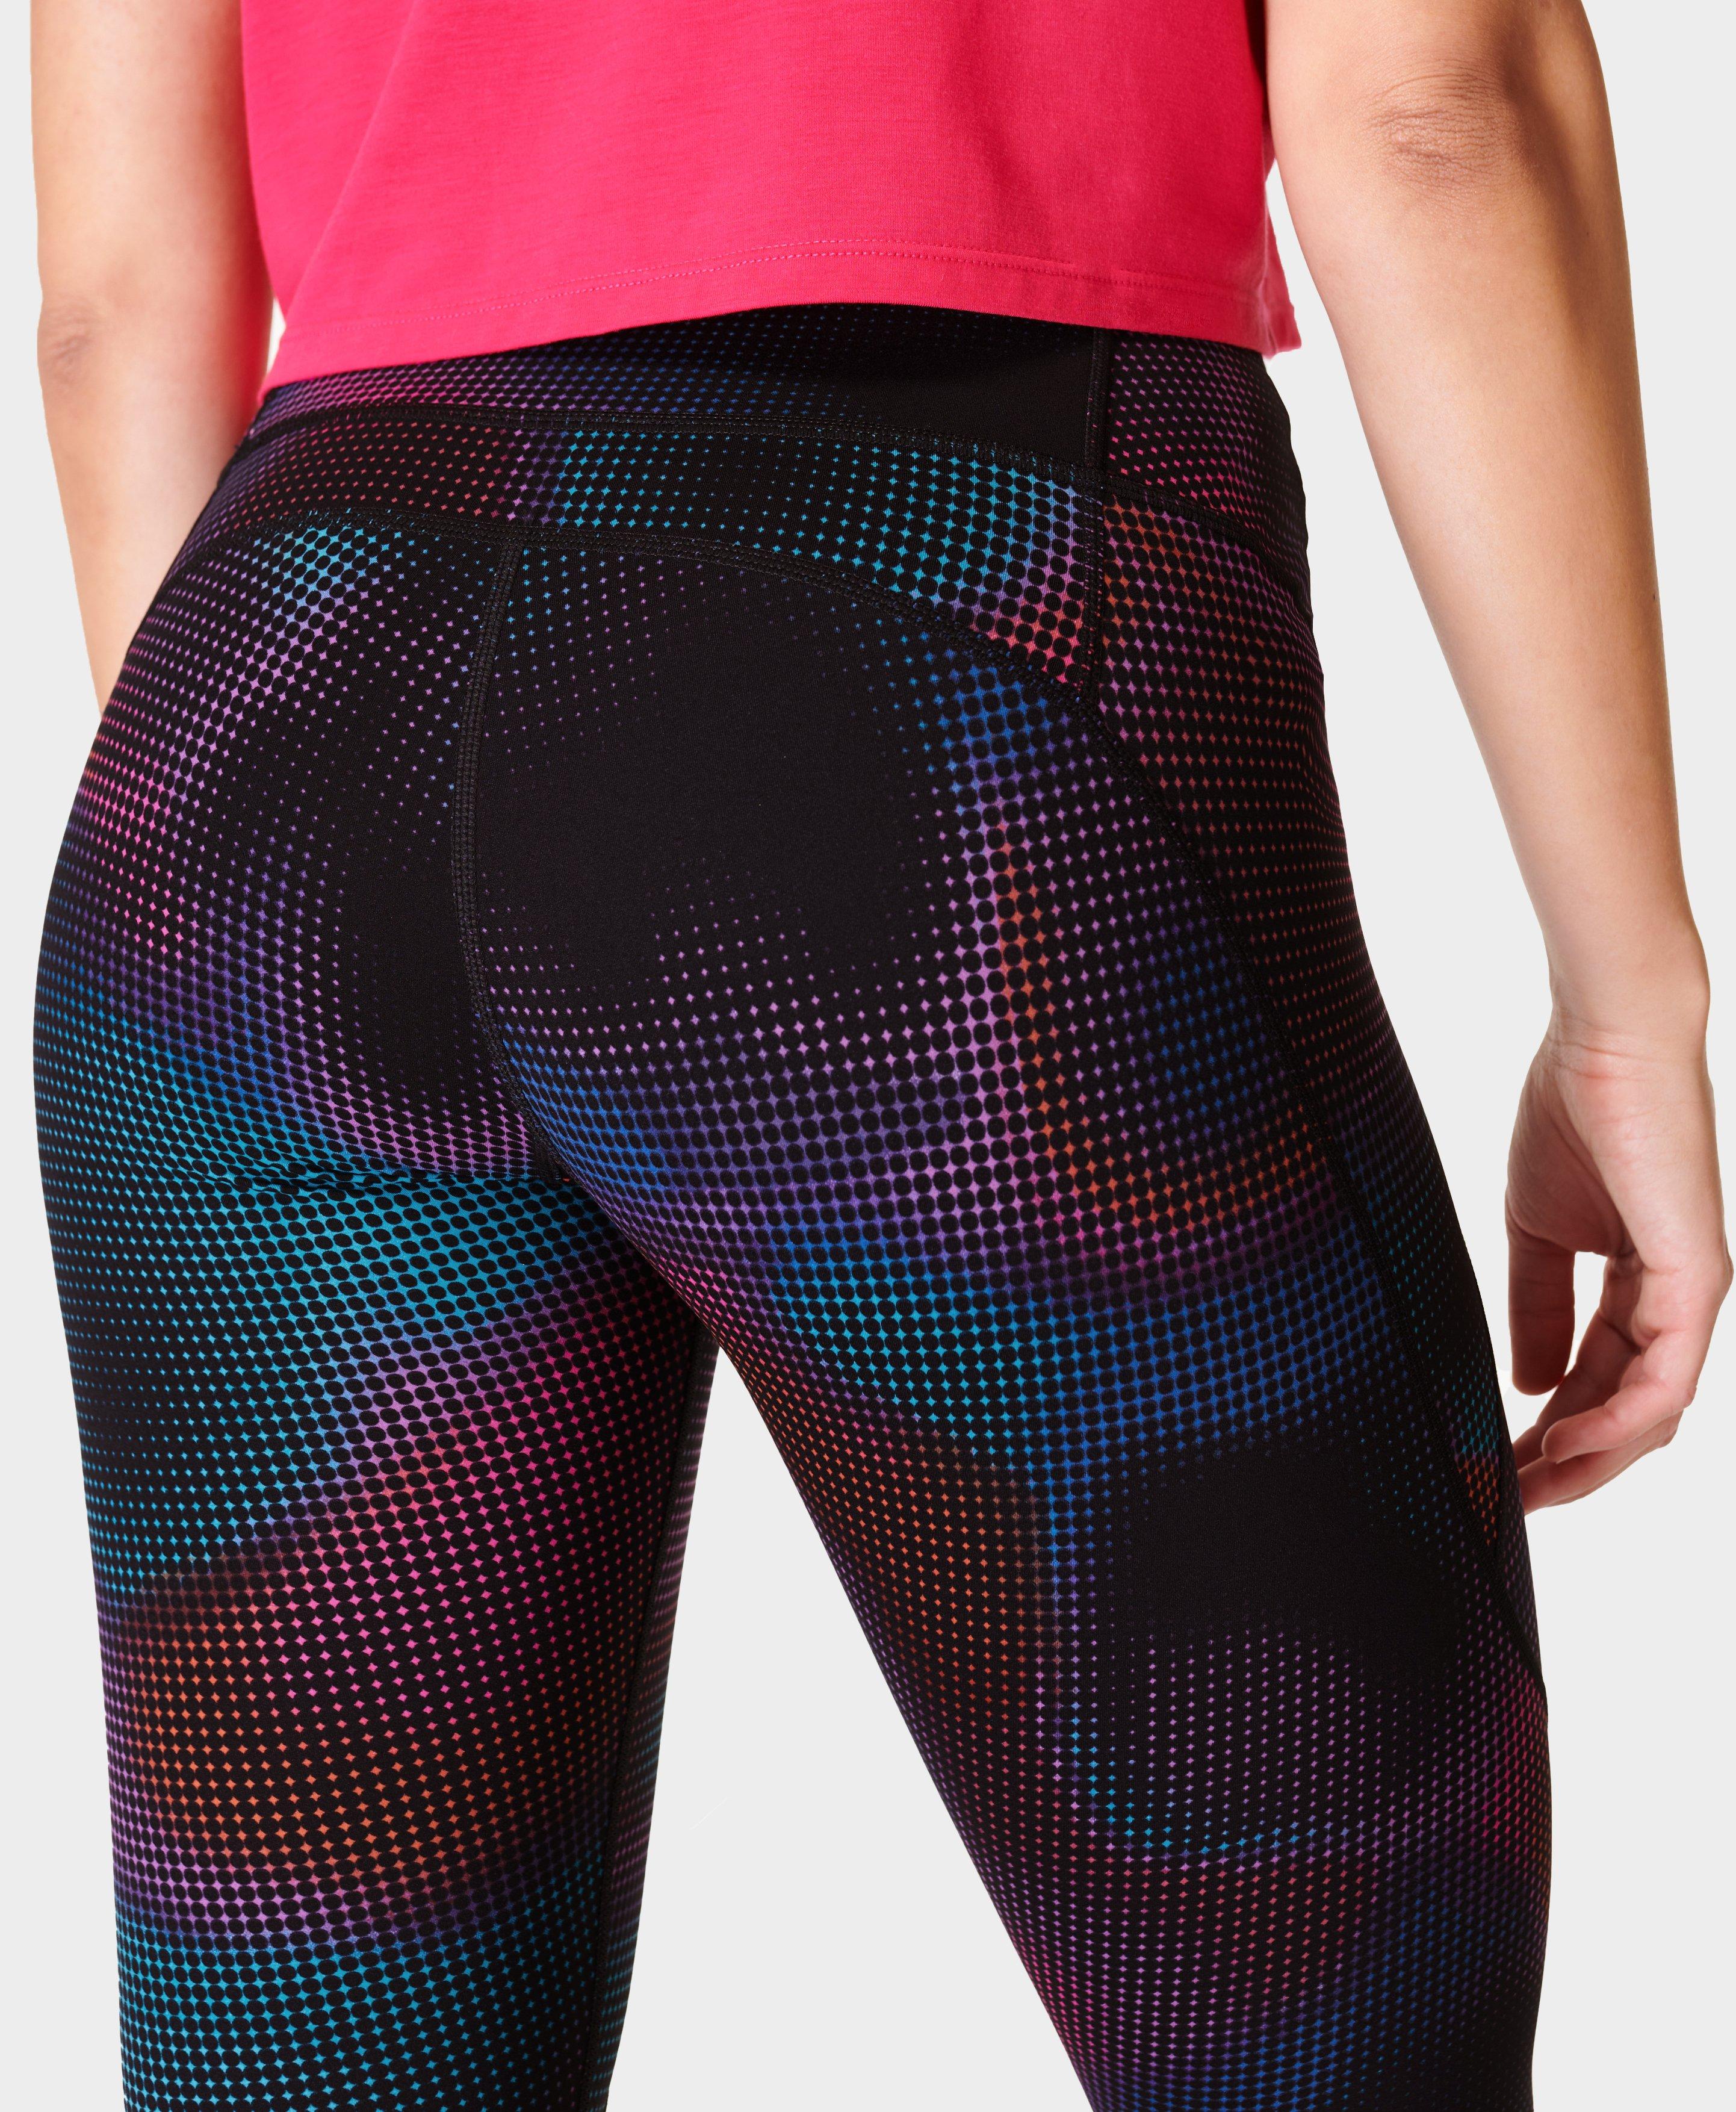 Power Gym Leggings - Black Gradient Dot Print, Women's Leggings